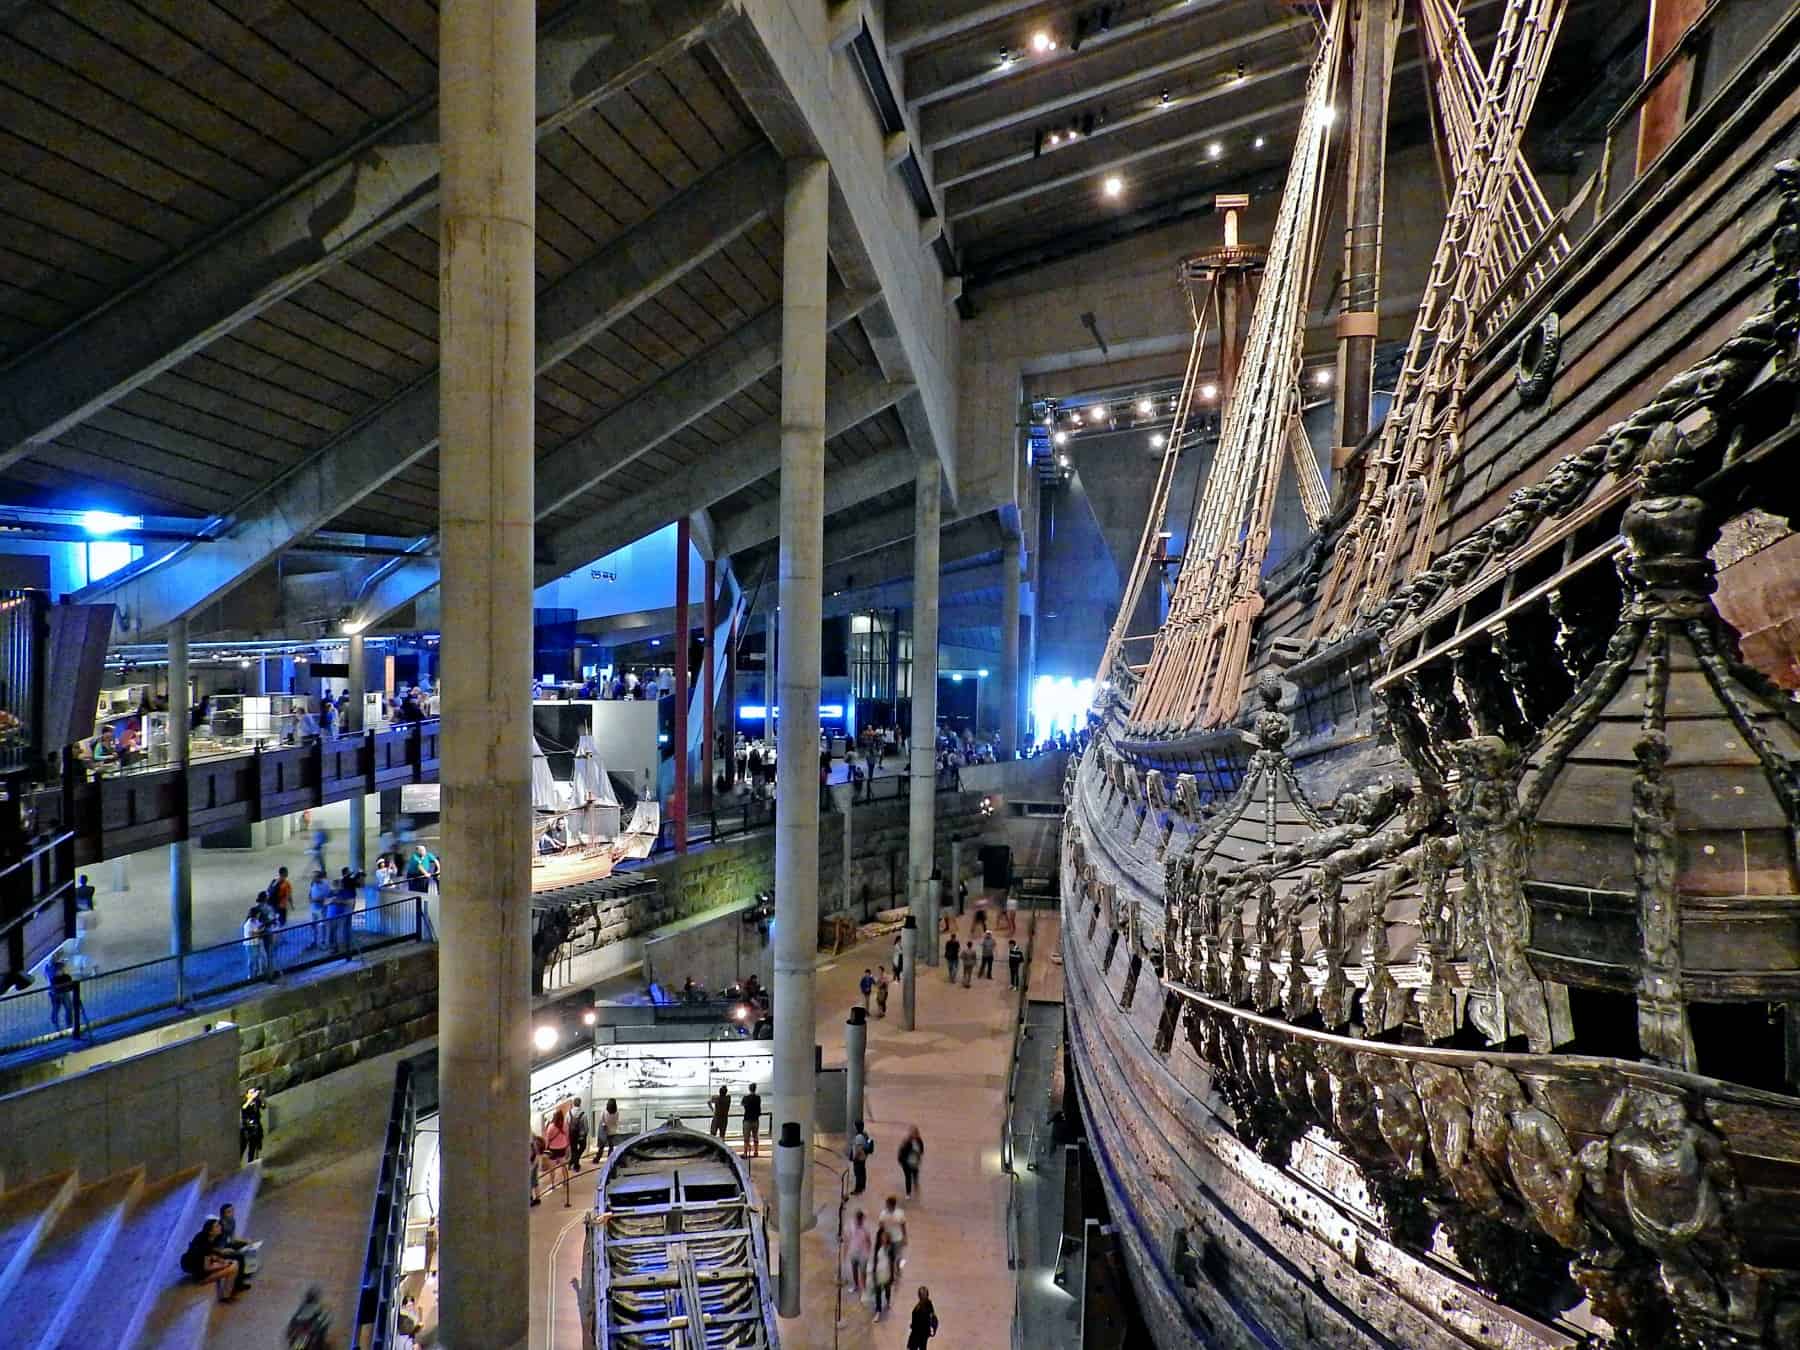 Το ναυτικό μουσείο Vasa στην Στοκχόλμη. Στην εικόνα διακρίνεται το ομώνυμο πολεμικό πλοίο, που το παρθενικό του ταξίδι πραγματοποιήθηκε το 1628